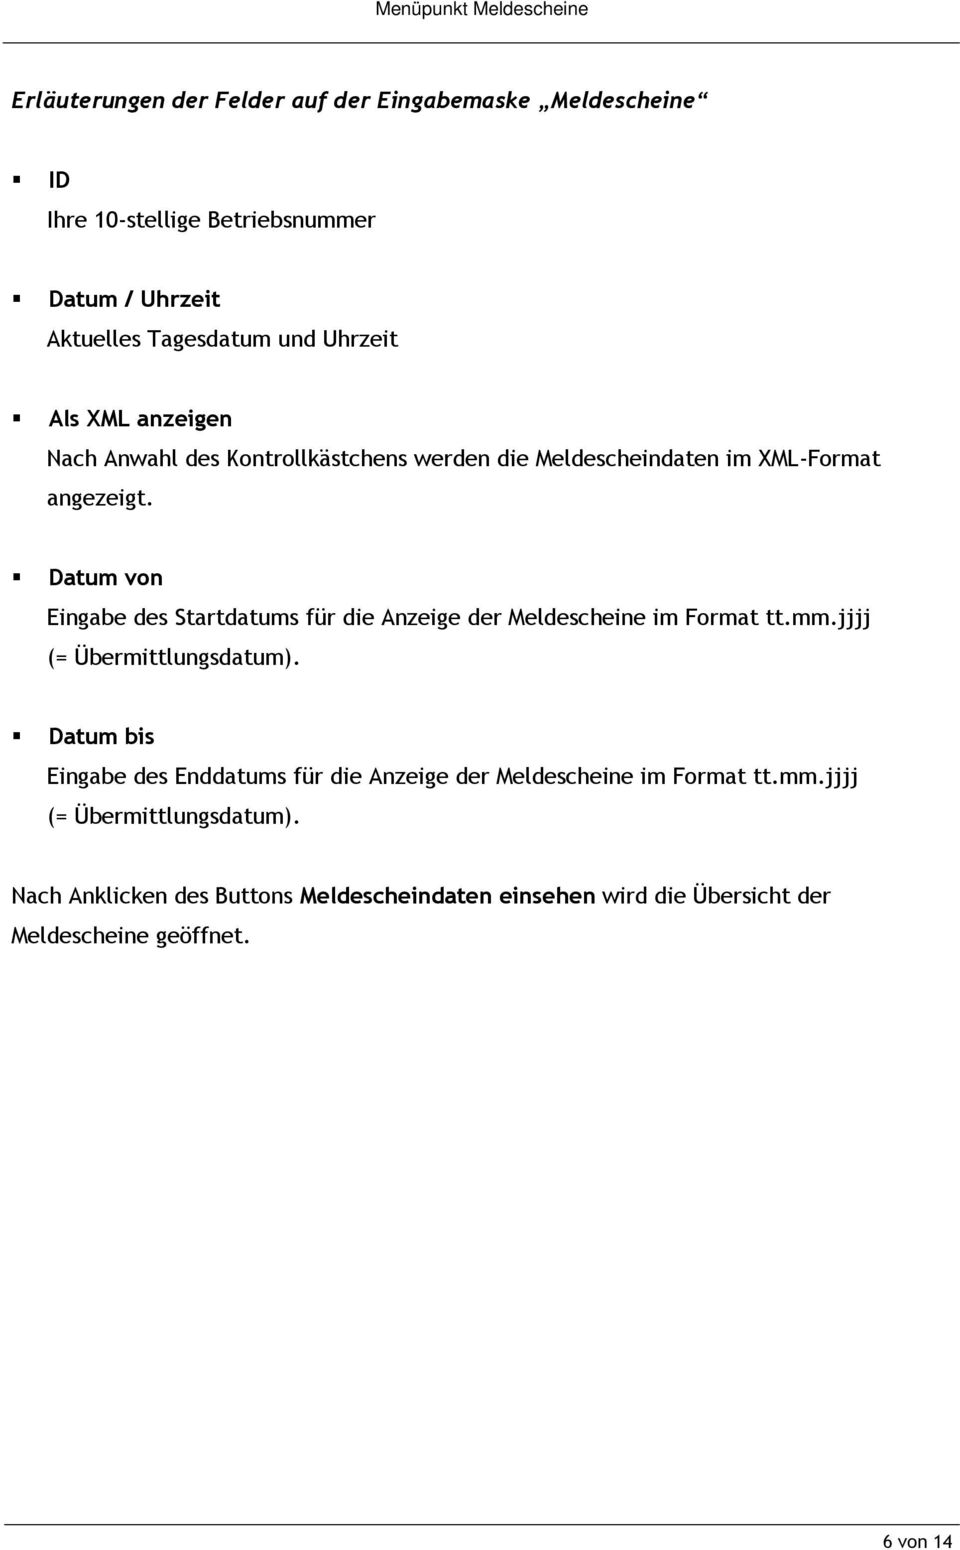 Datum von Eingabe des Startdatums für die Anzeige der Meldescheine im Format tt.mm.jjjj (= Übermittlungsdatum).